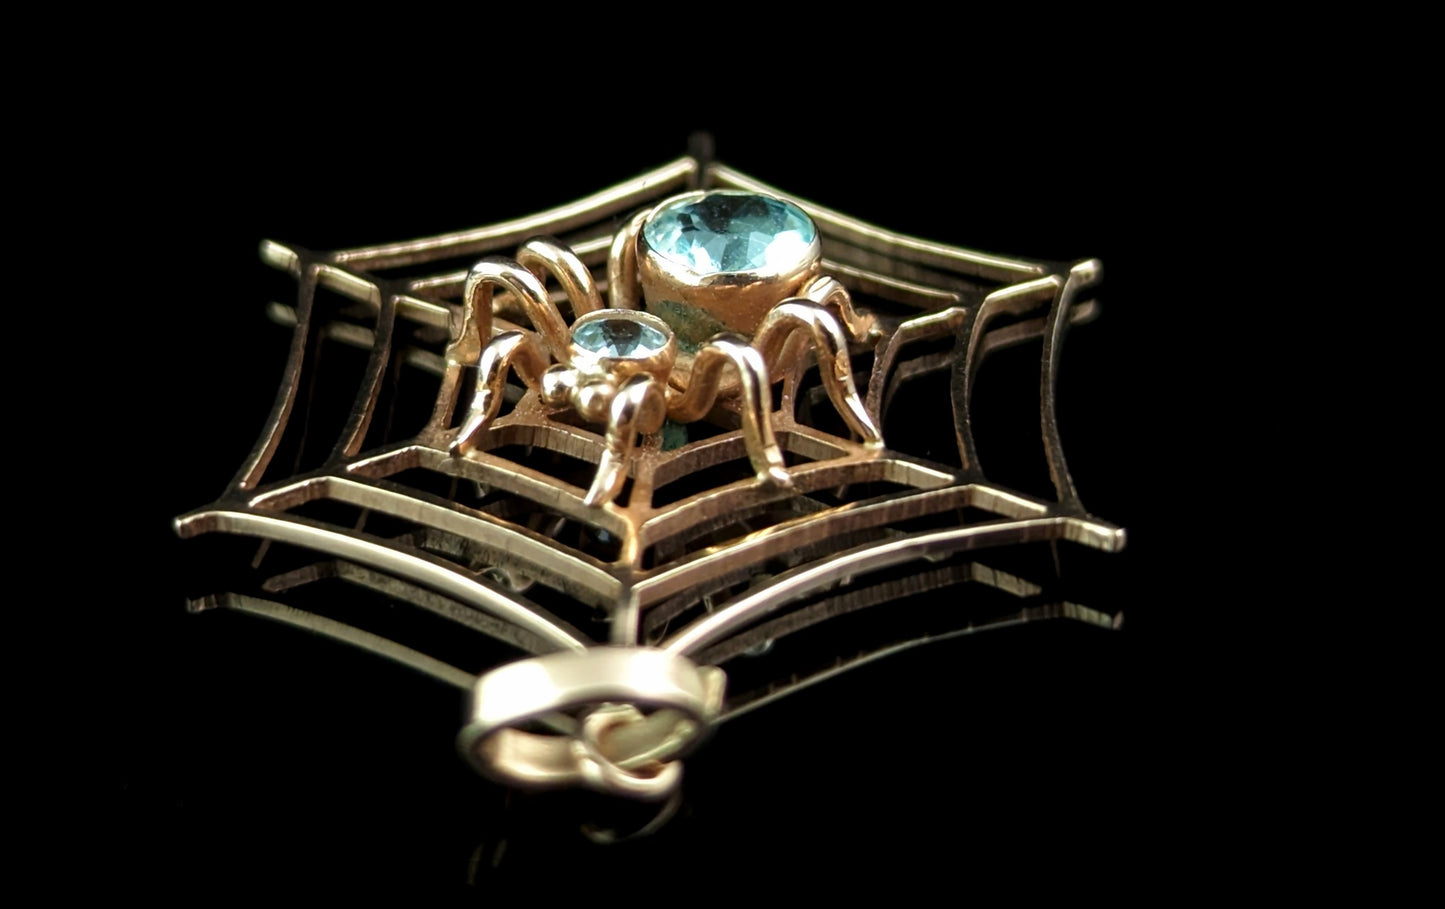 Antique Spider and Web pendant, Aquamarine, 9ct rose gold